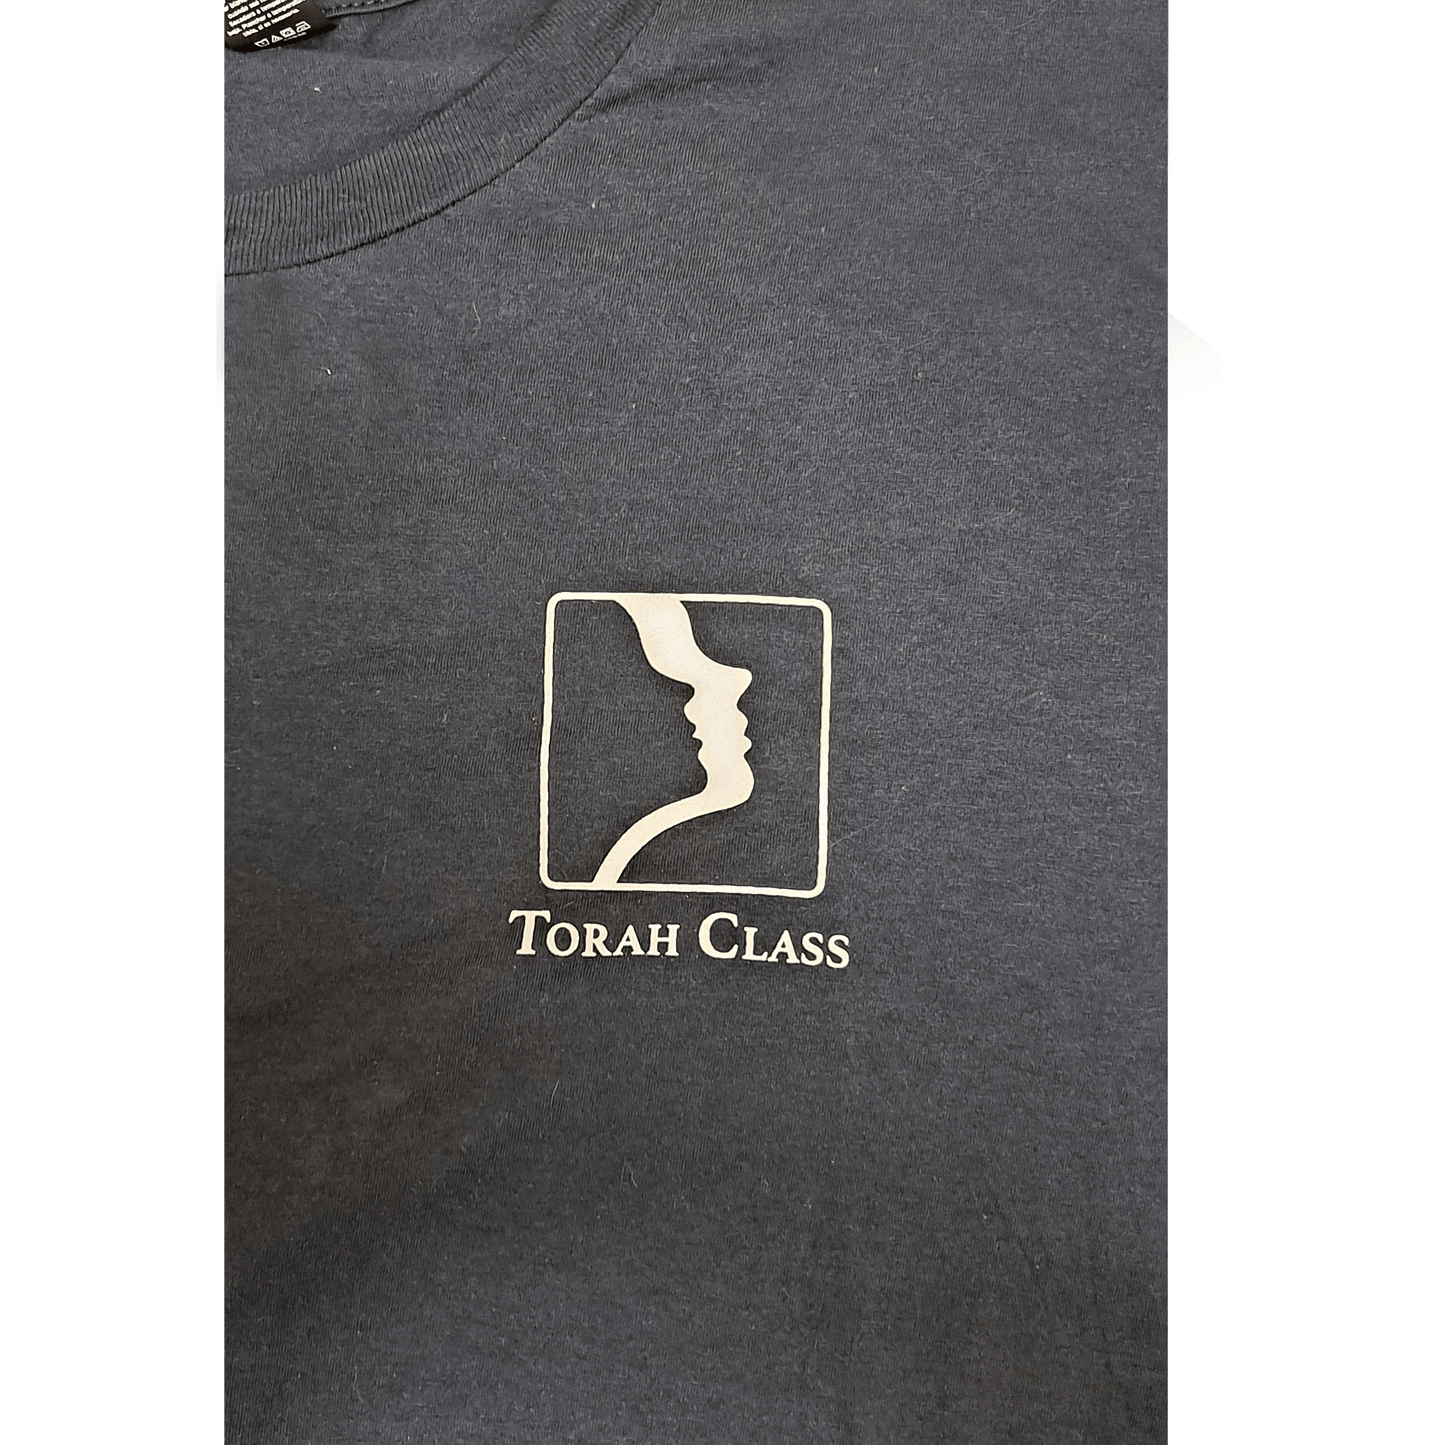 Torah Class Embroidered T-Shirt